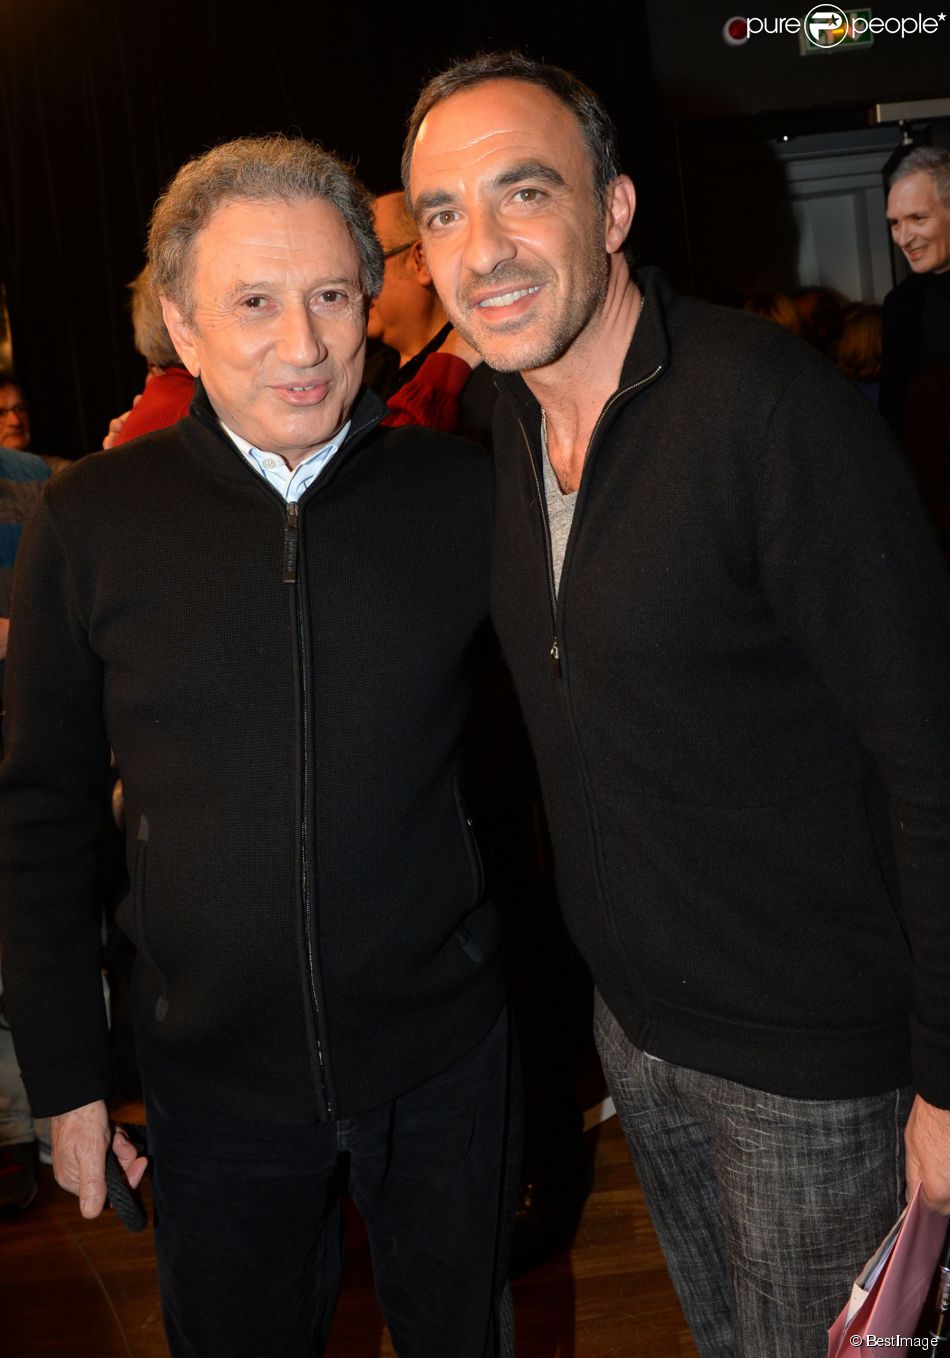 Exclusif - Michel Drucker et Nikos Aliagas participent à la journée spéciale des 60 ans de la radio Europe 1 à Paris, le 4 février 2015.